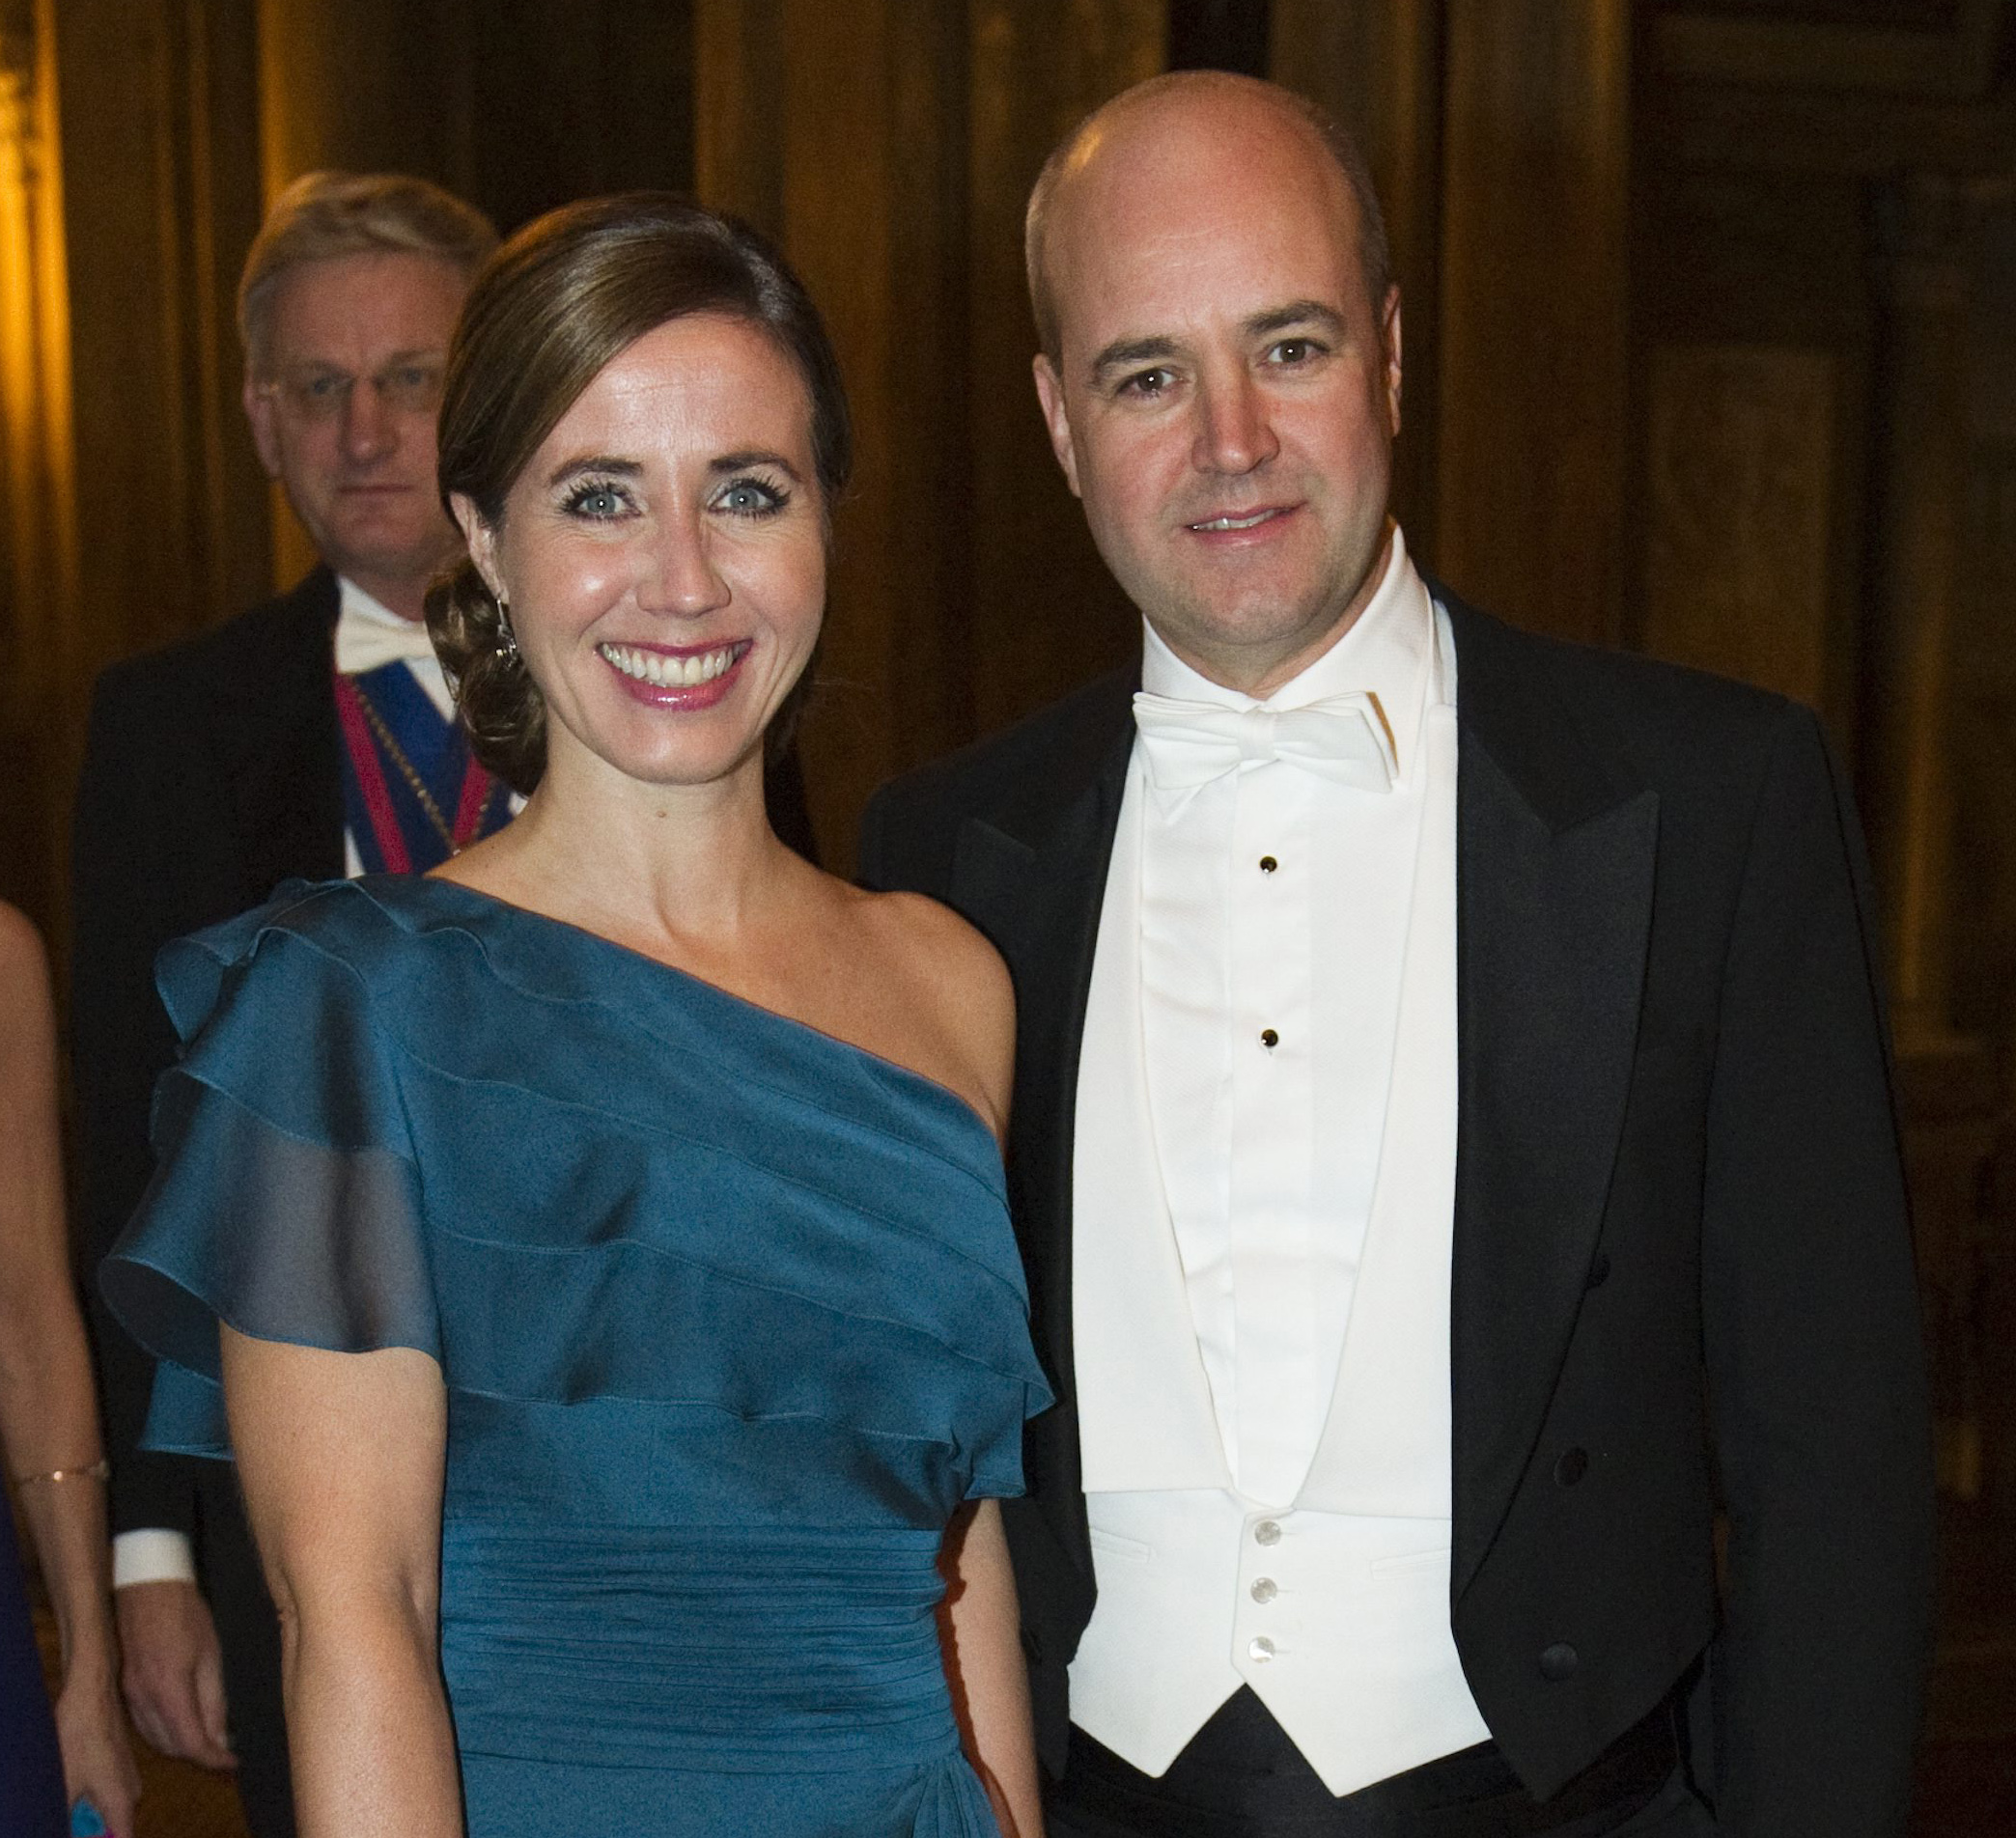 Filippa Reinfeldt var tidigare gift med statsminister Fredrik Reinfeldt.